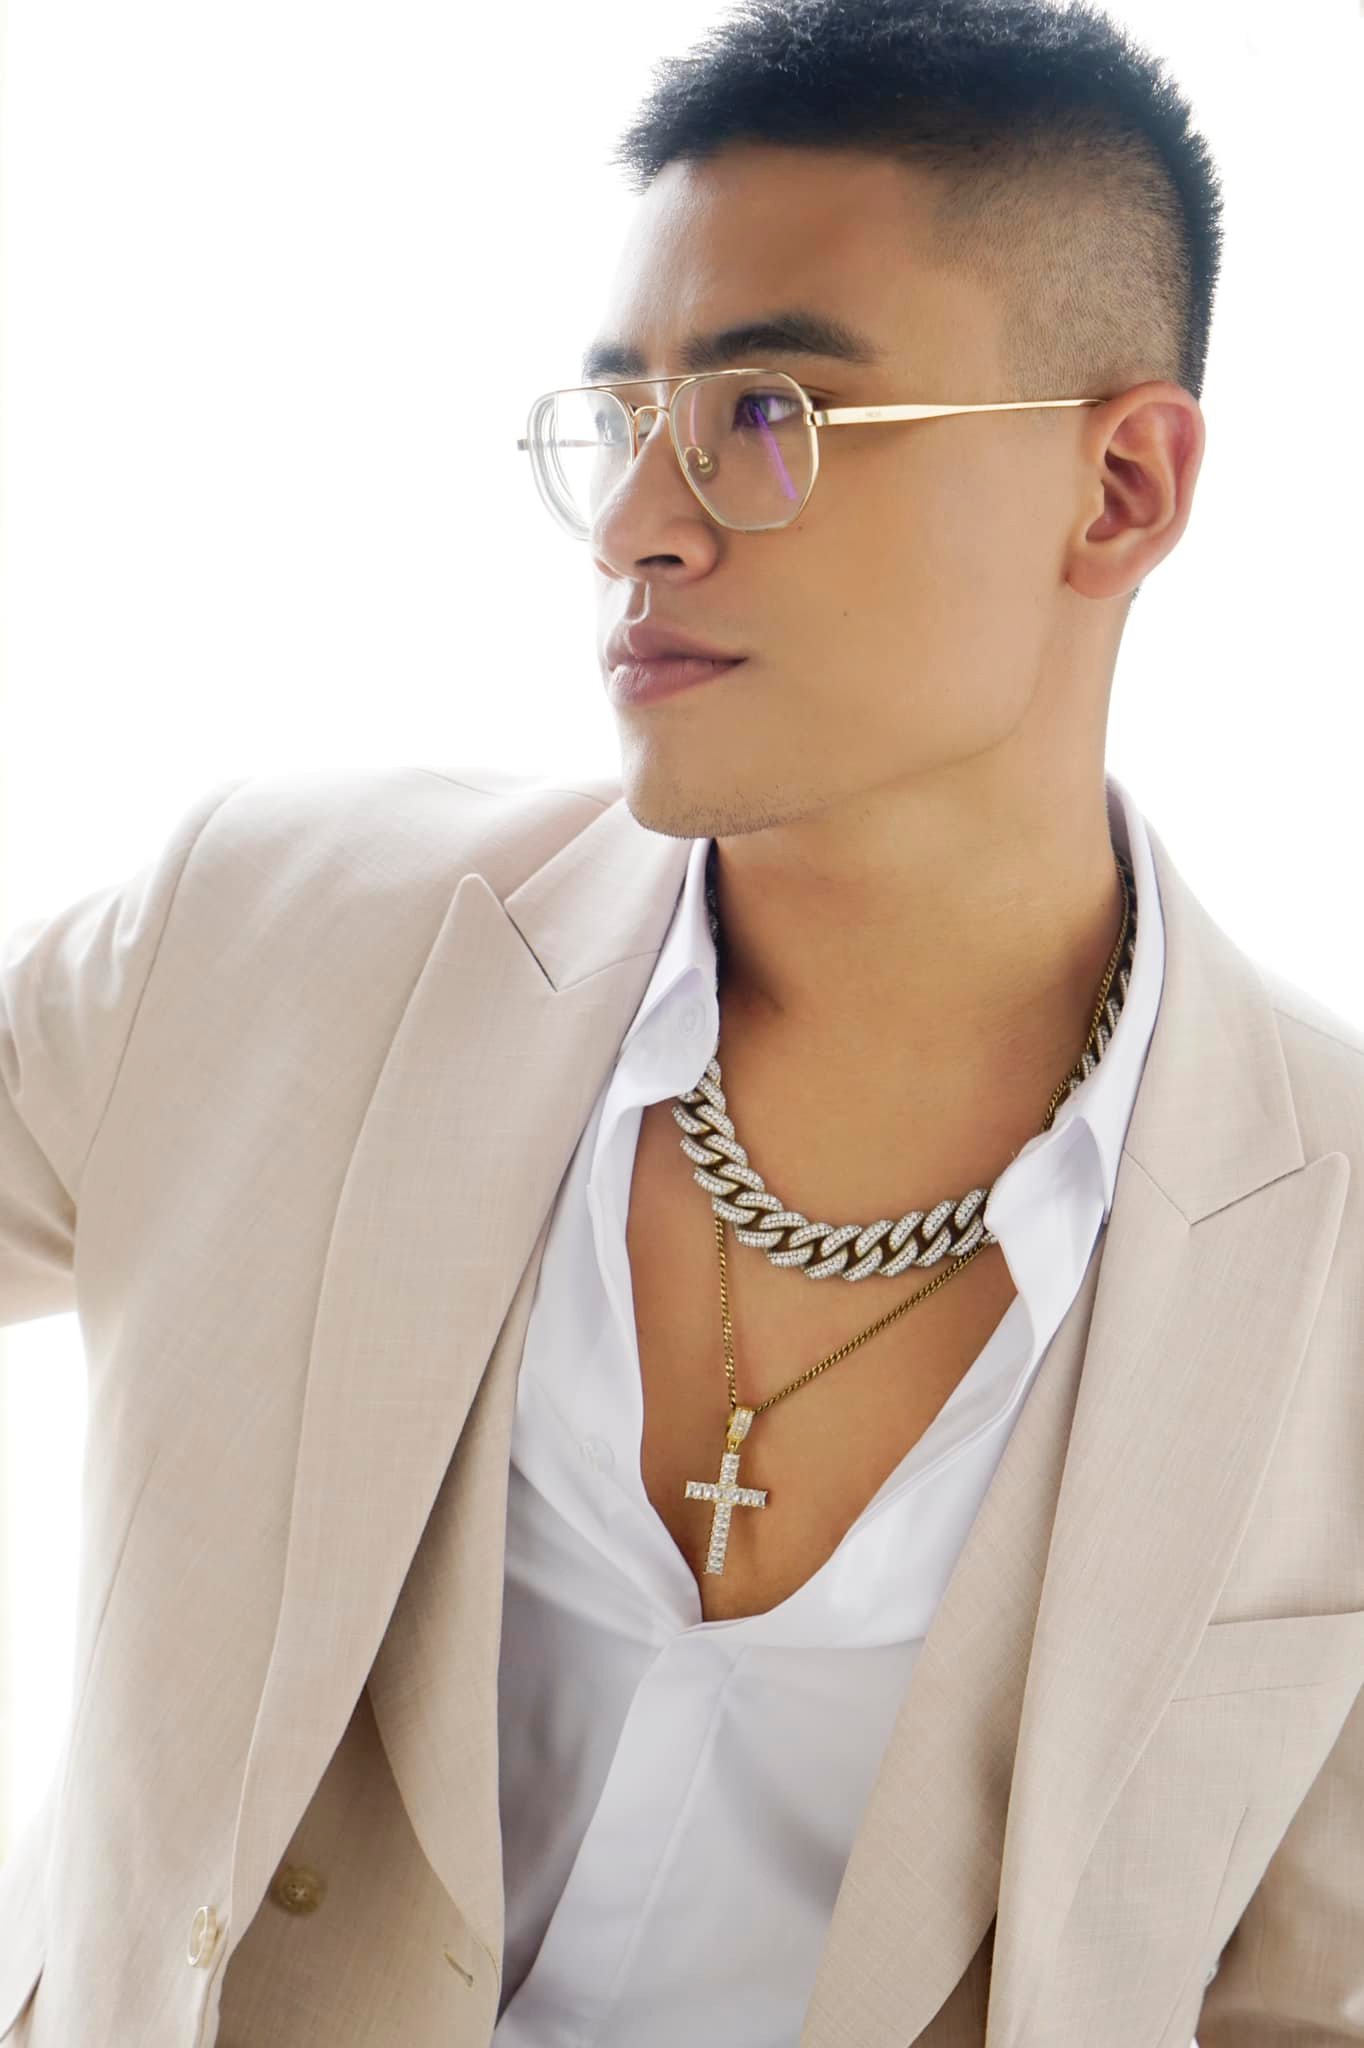 Á quân Rap Việt G-Ducky trăn trở vì được Forbes Under 30 vinh danh: Liệu tôi xứng đáng? - Ảnh 1.